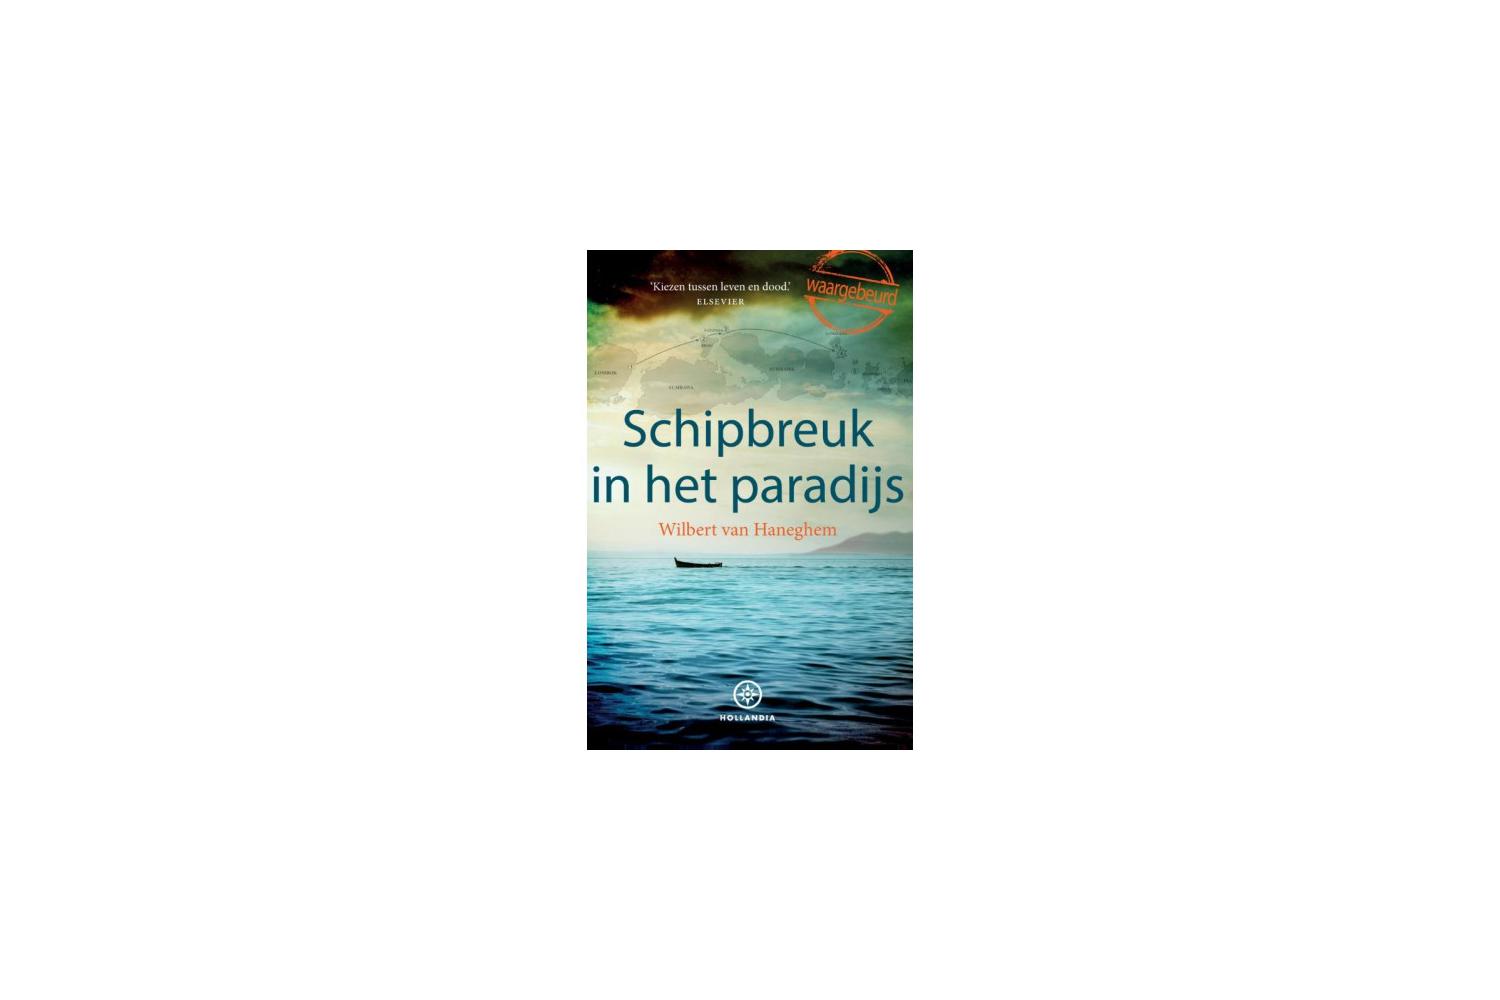 Schipbreuk in het paradijs - Wilbert van Haneghem